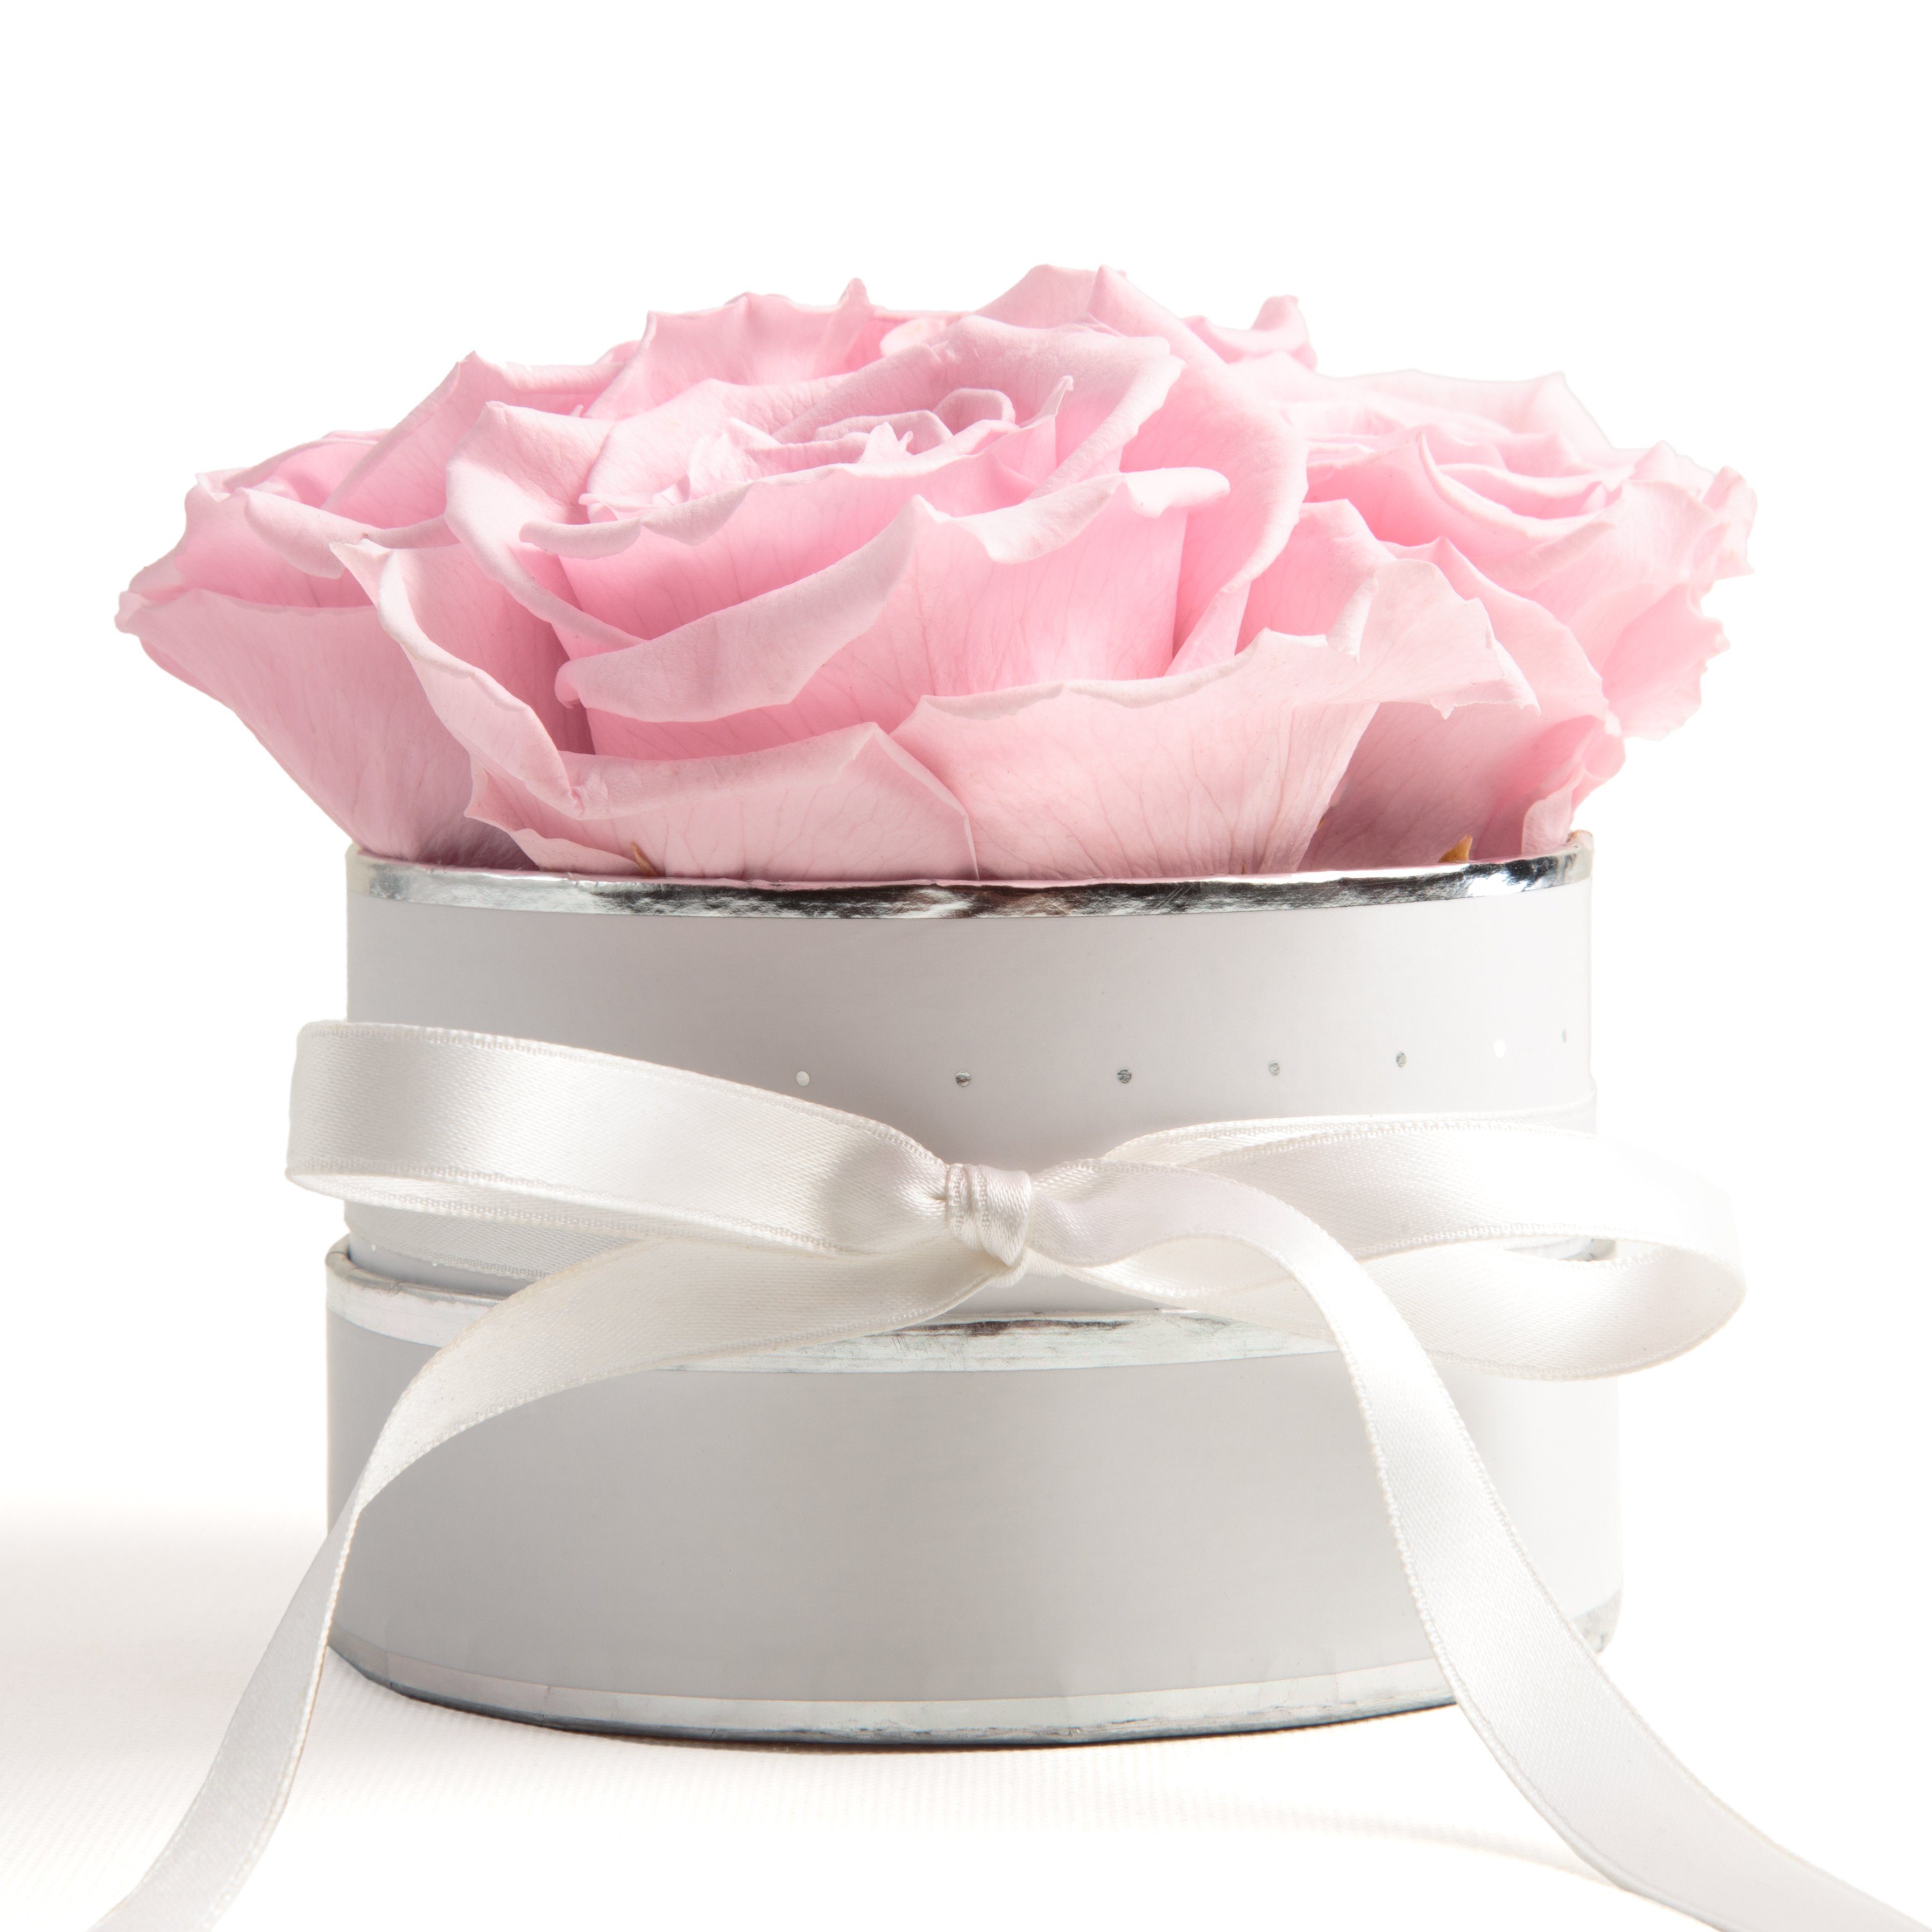 Kunstblume Infinity Rosenbox weiß rund 4 konservierte Rosen inklusiv Geschenkbox Rose, ROSEMARIE SCHULZ Heidelberg, Höhe 10 cm, echte Rosen haltbar 3 Jahre Rosa